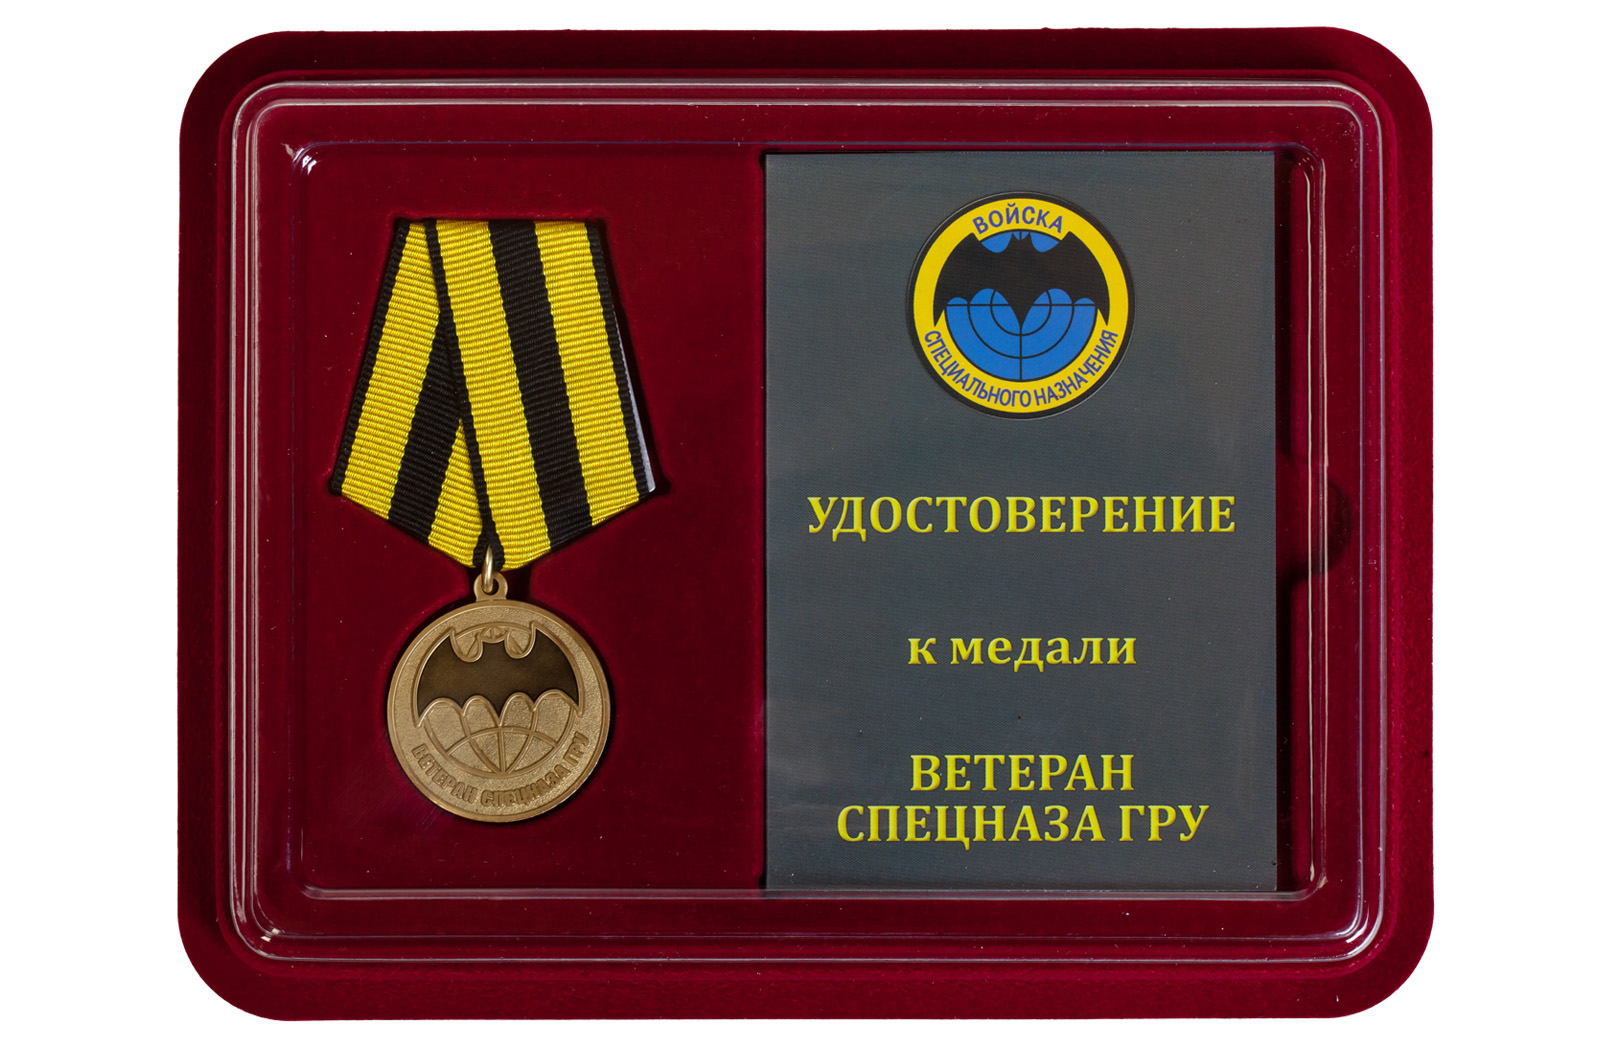 Купить медаль Ветеран Спецназа ГРУ в подарок